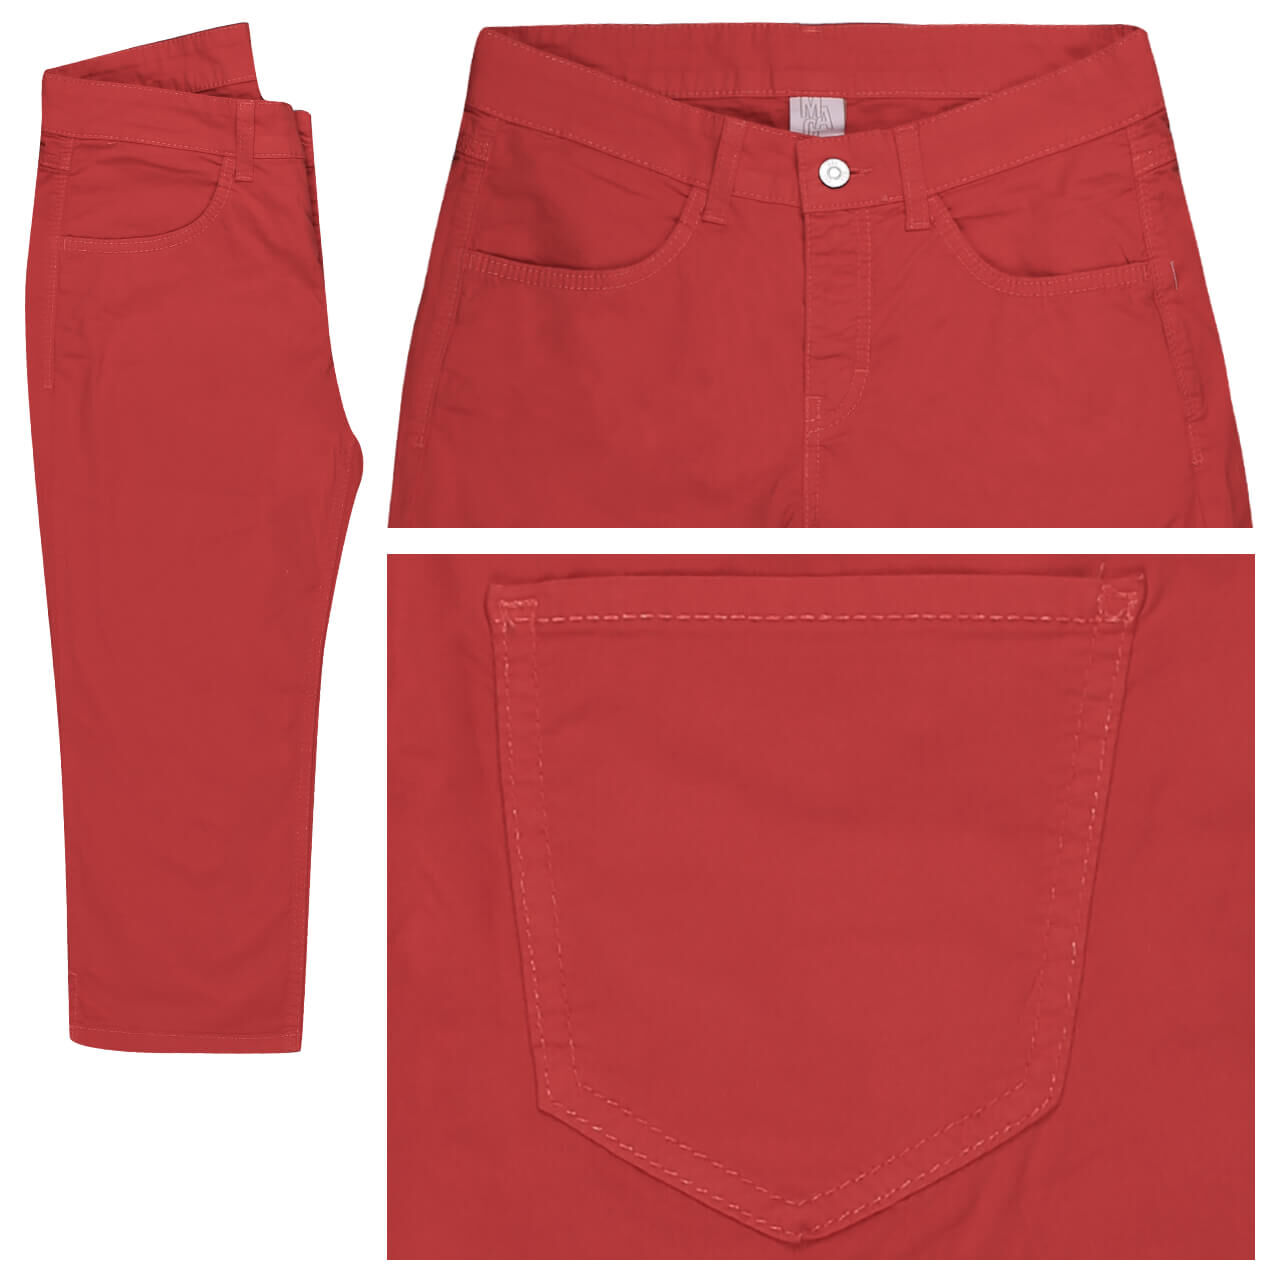 MAC Carpi Baumwollhose für Damen in Rot, FarbNr.: 891R